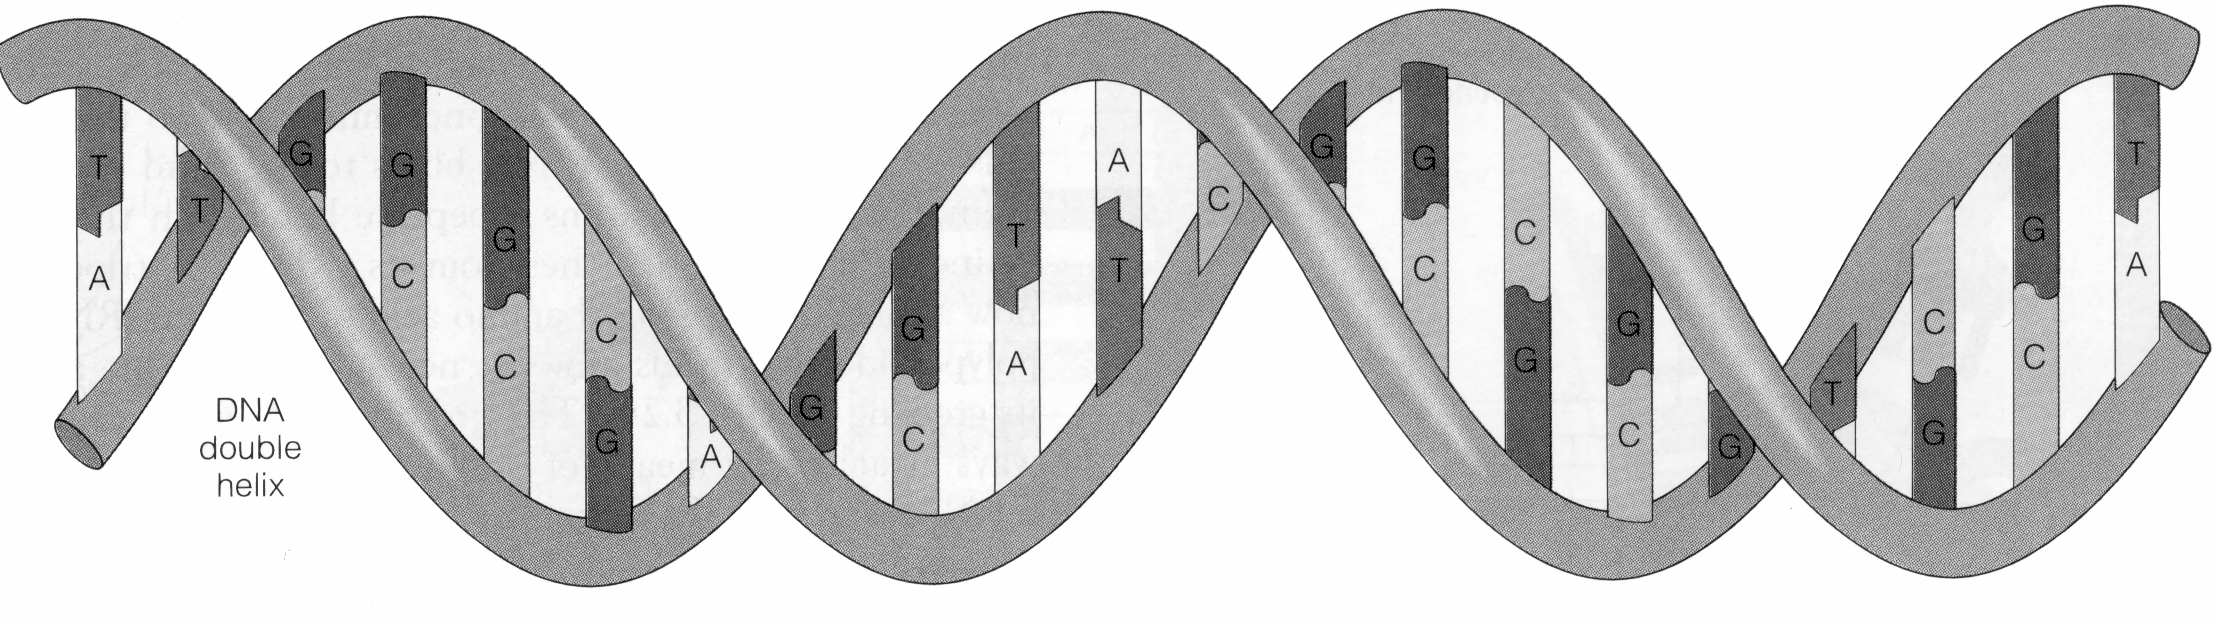 Схема строения ДНК двойная спираль